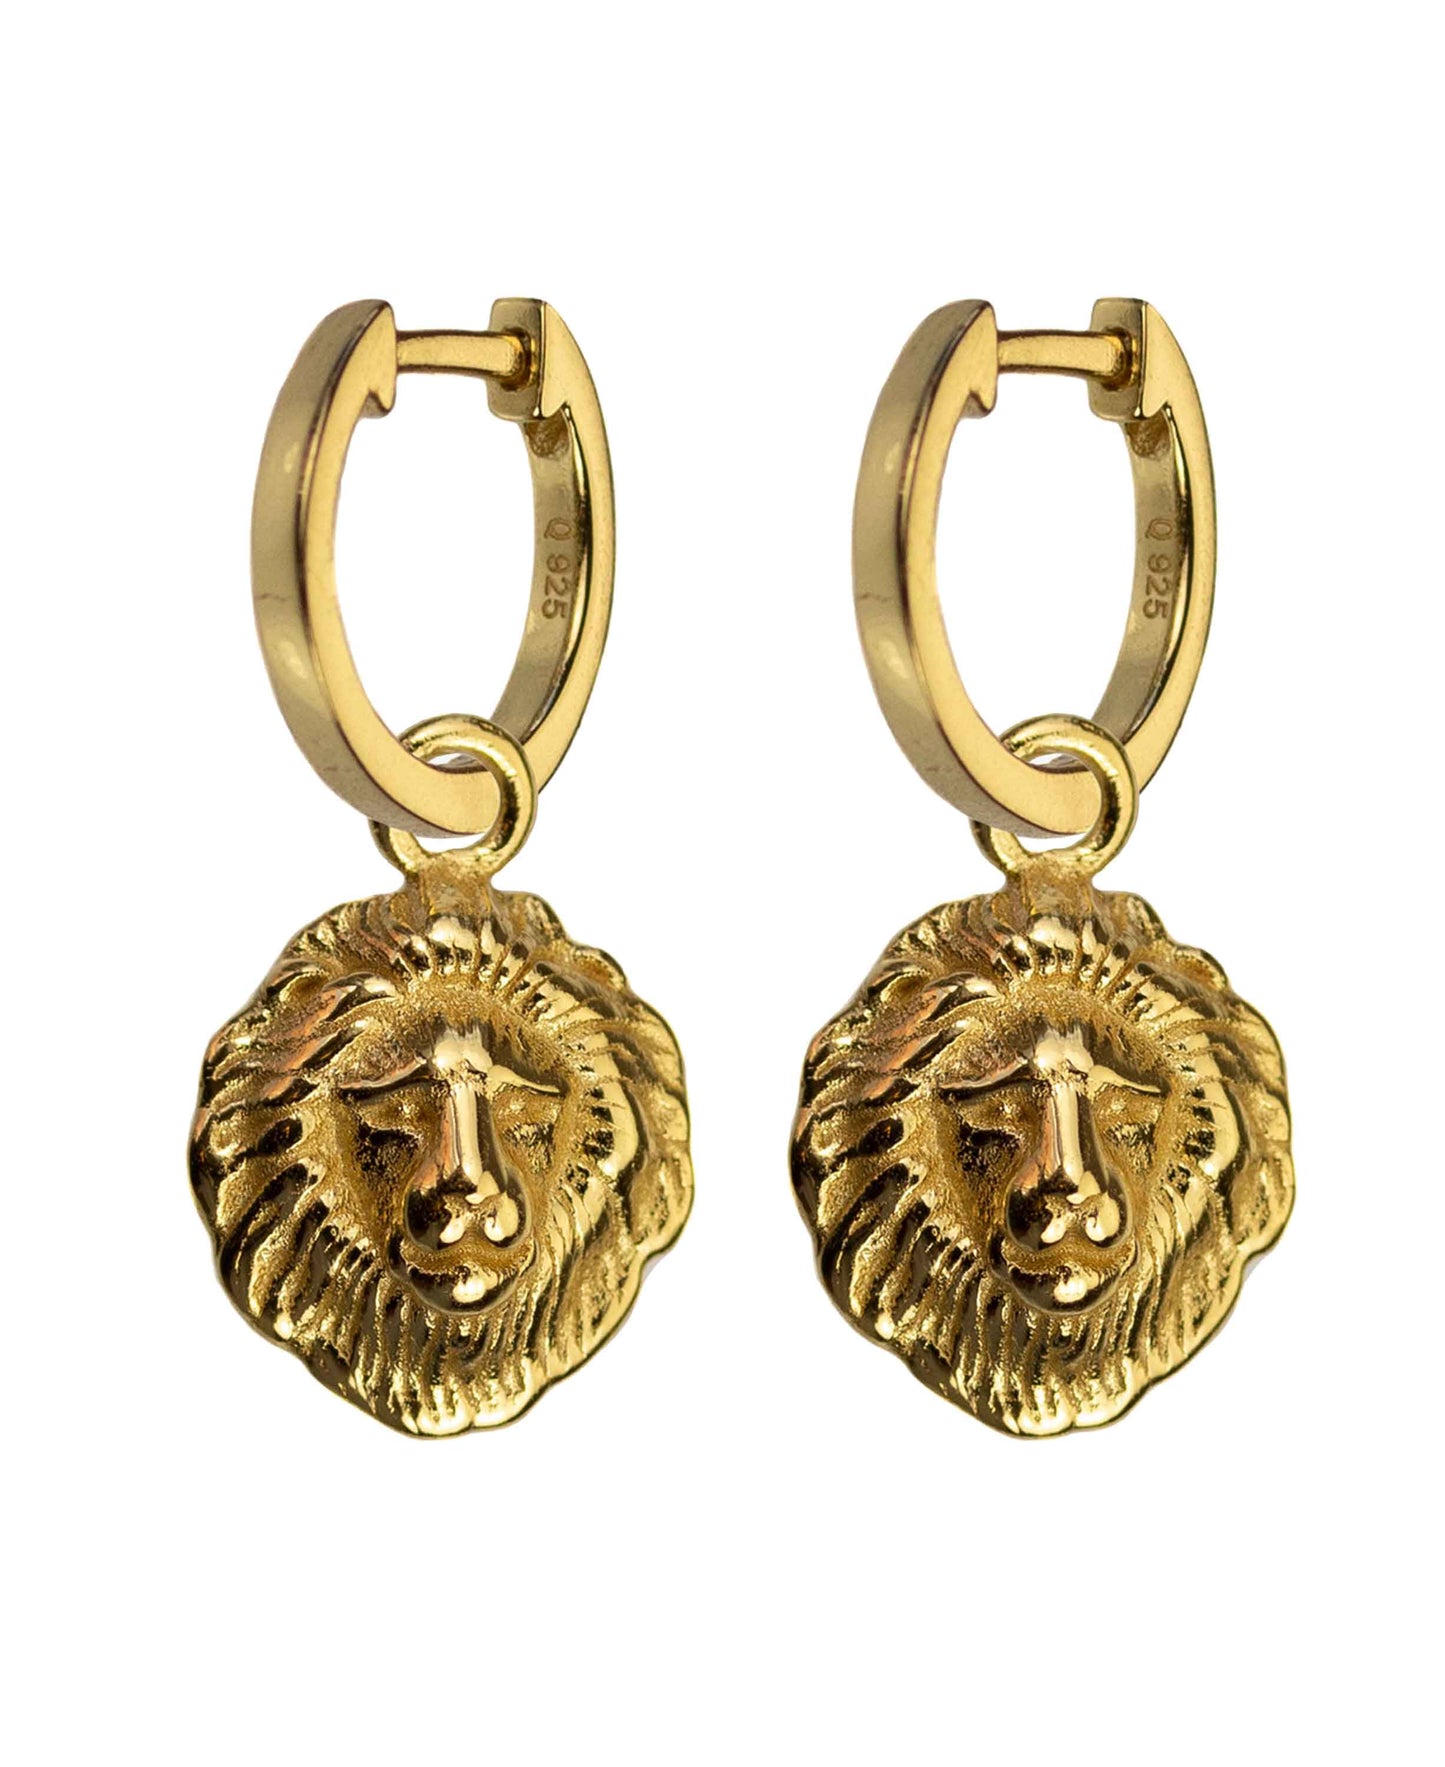 Lions head earrings